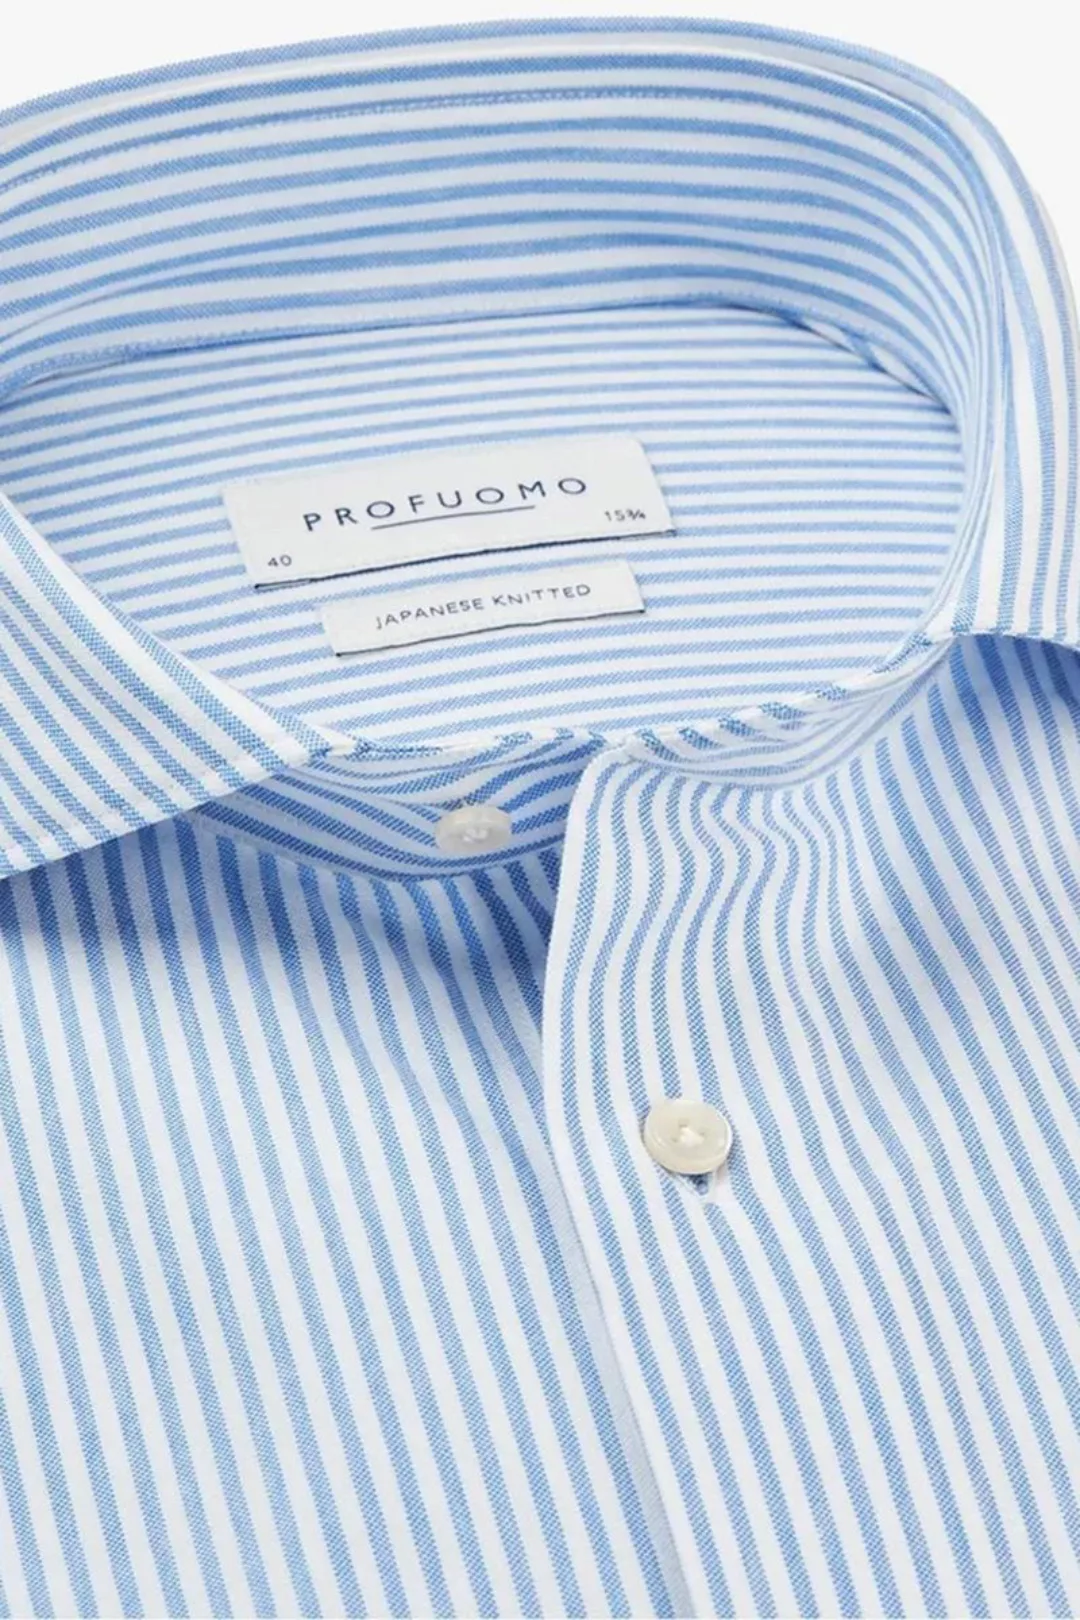 Profuomo Hemd Japanese Knitted Blau Streifen - Größe 38 günstig online kaufen